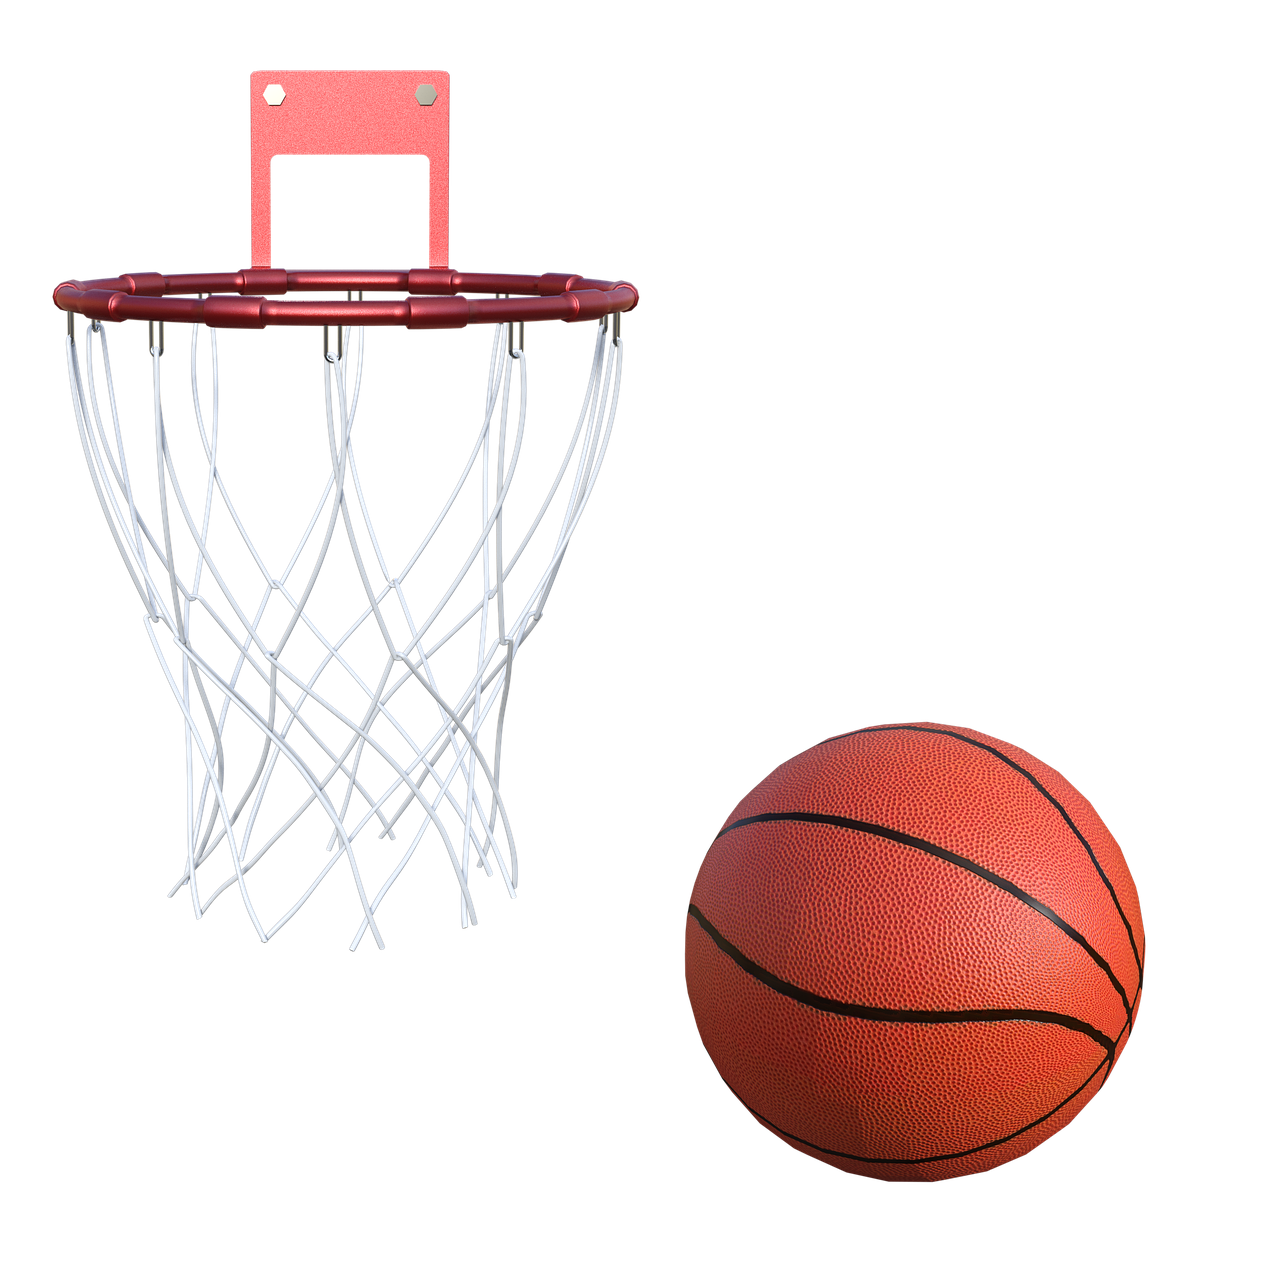 Баскетбольное кольцо бесплатно PNG Image